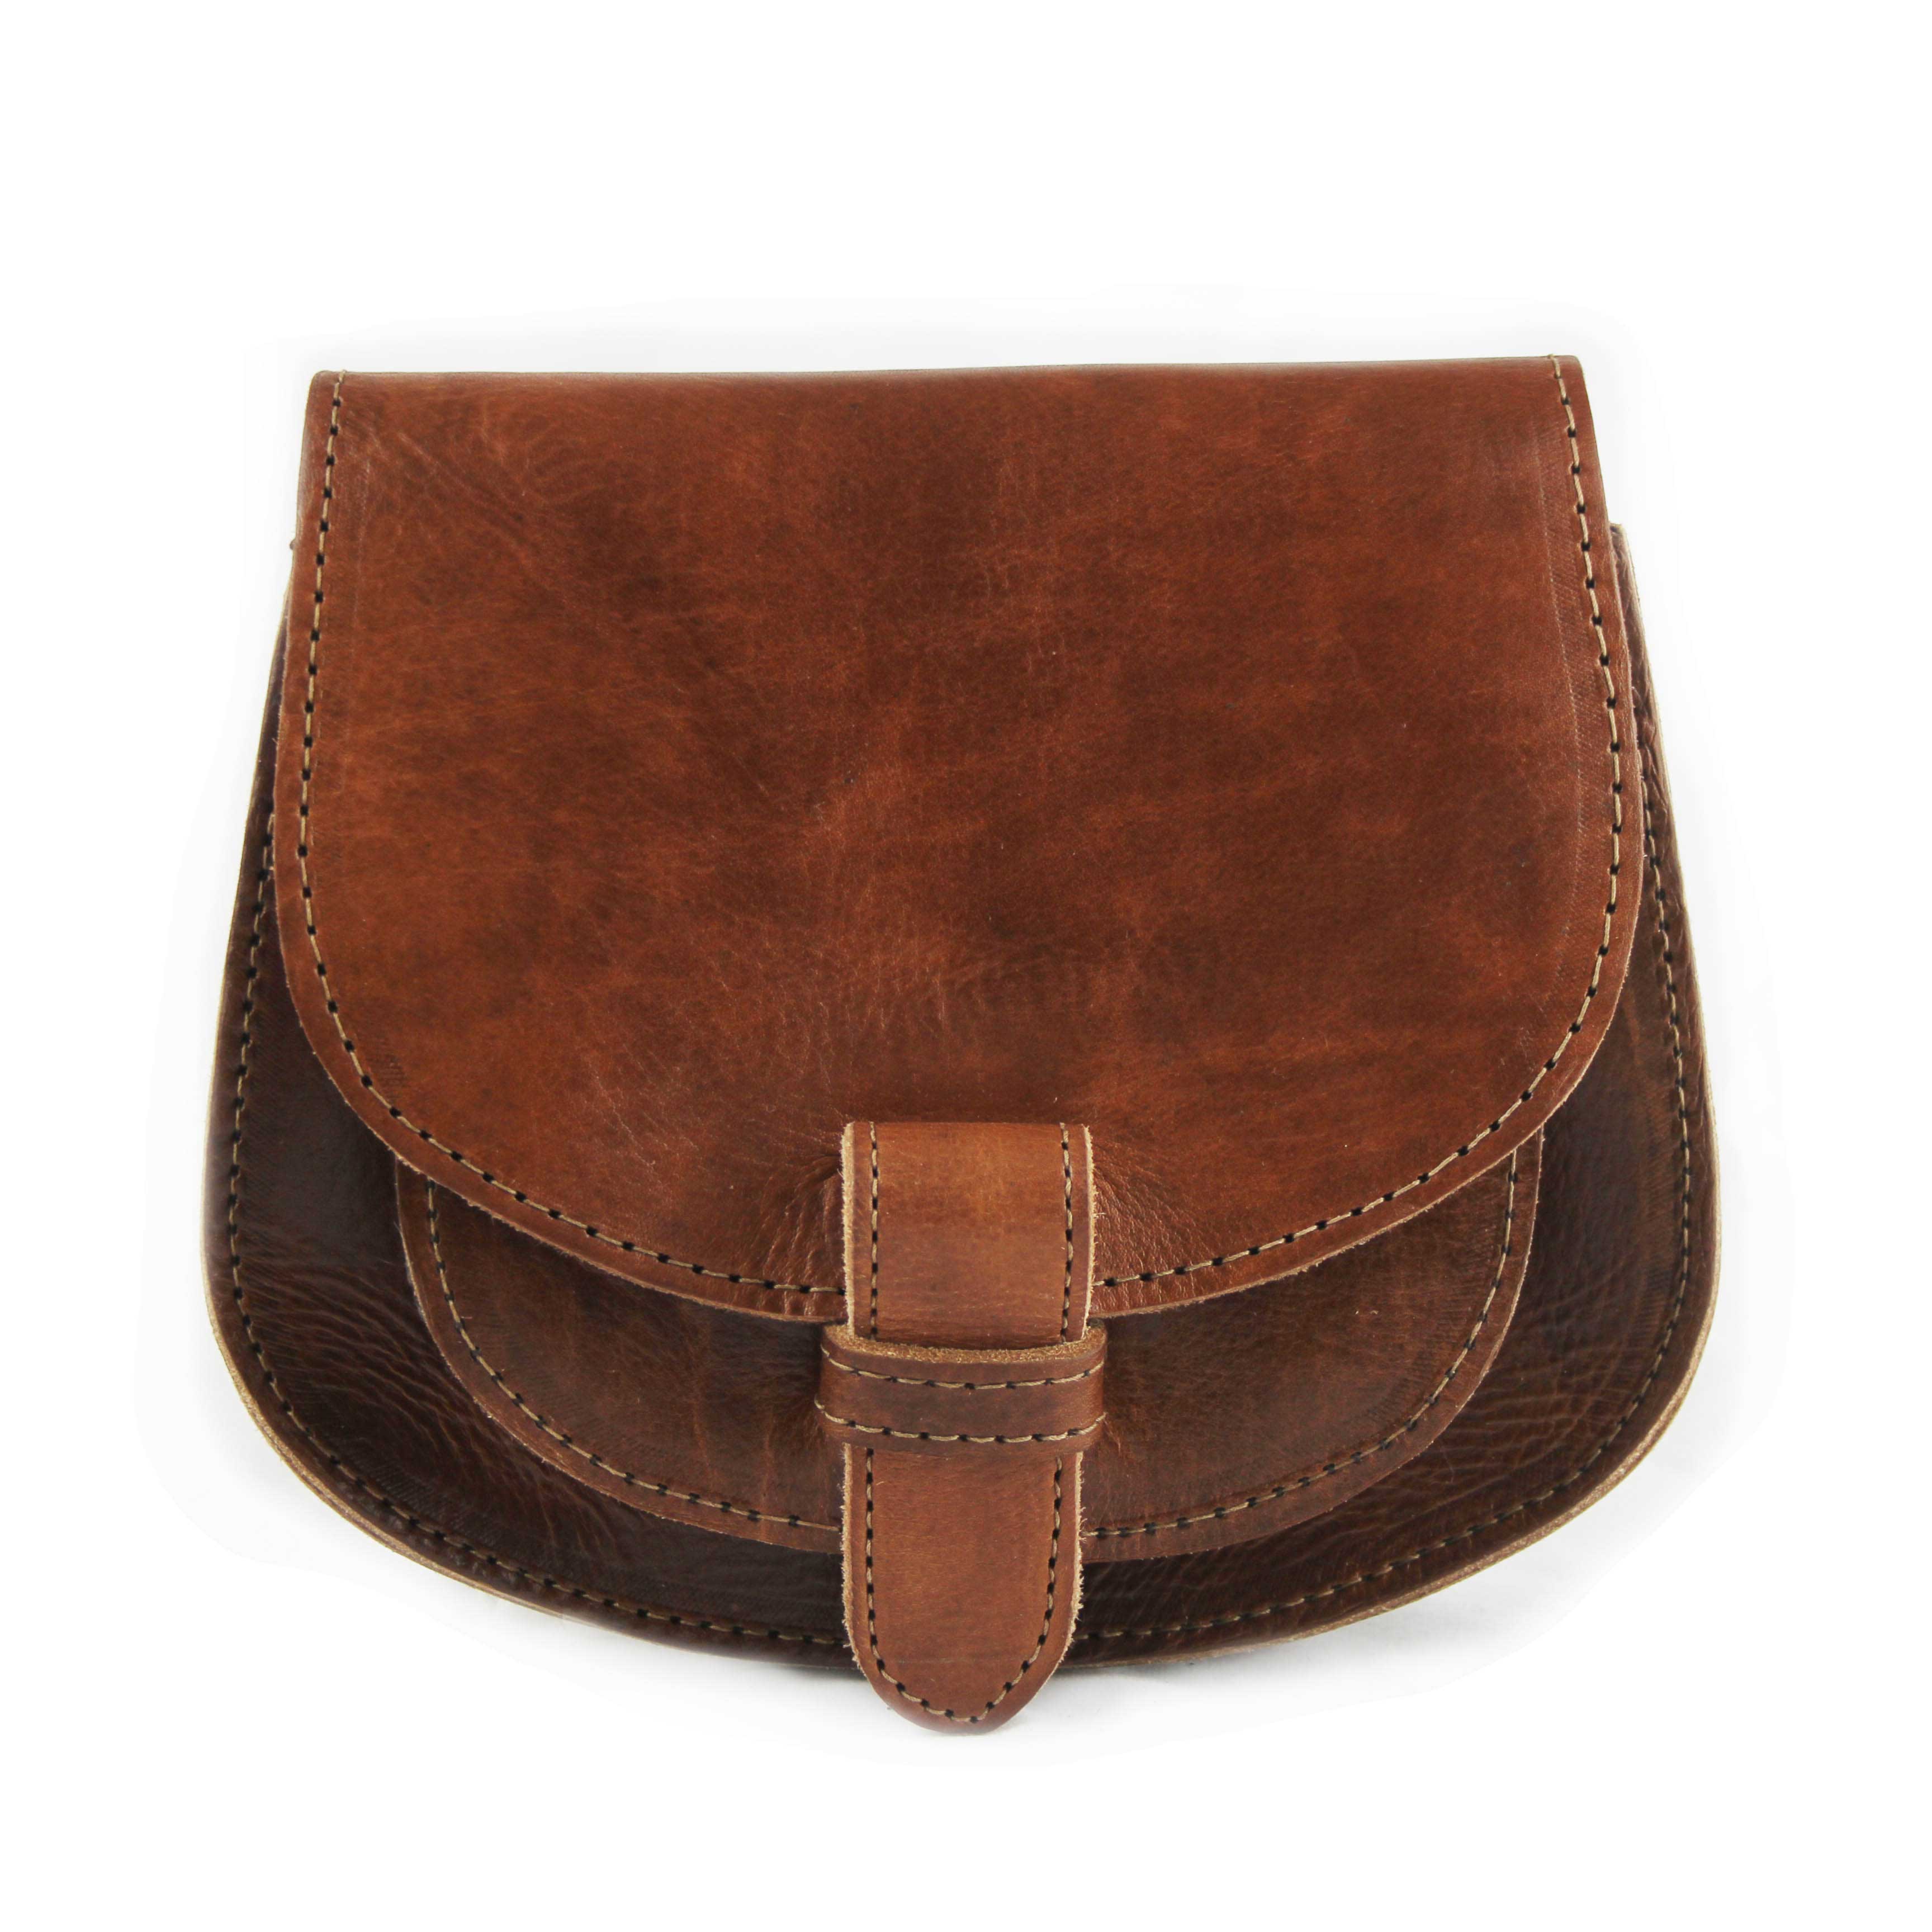 Maya Light Brown Leather Saddle Bag